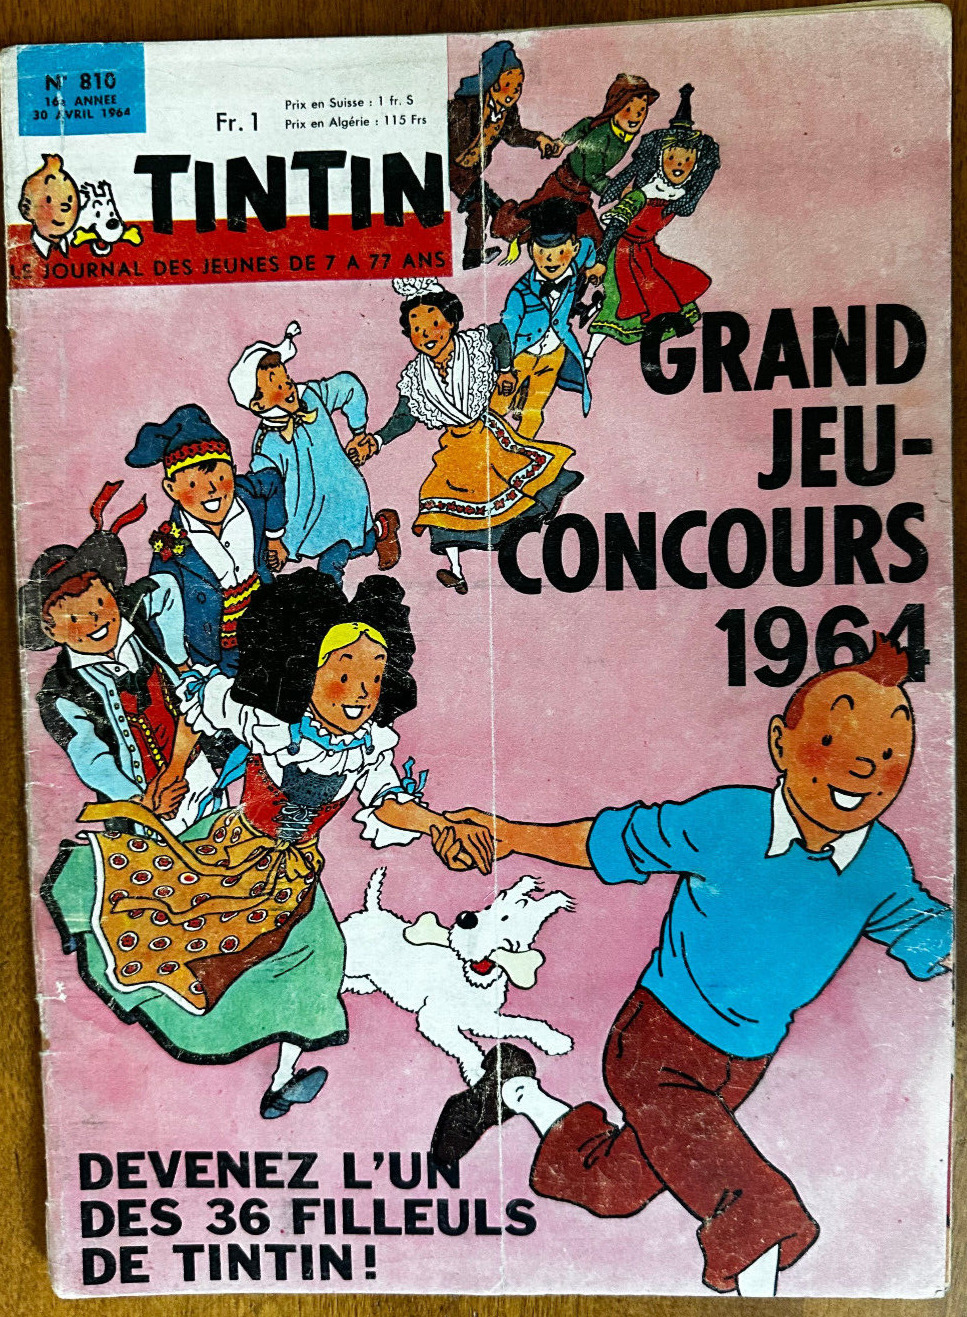 Le Journal de Tintin Avril 1964 #810 Grand Jeu Concours